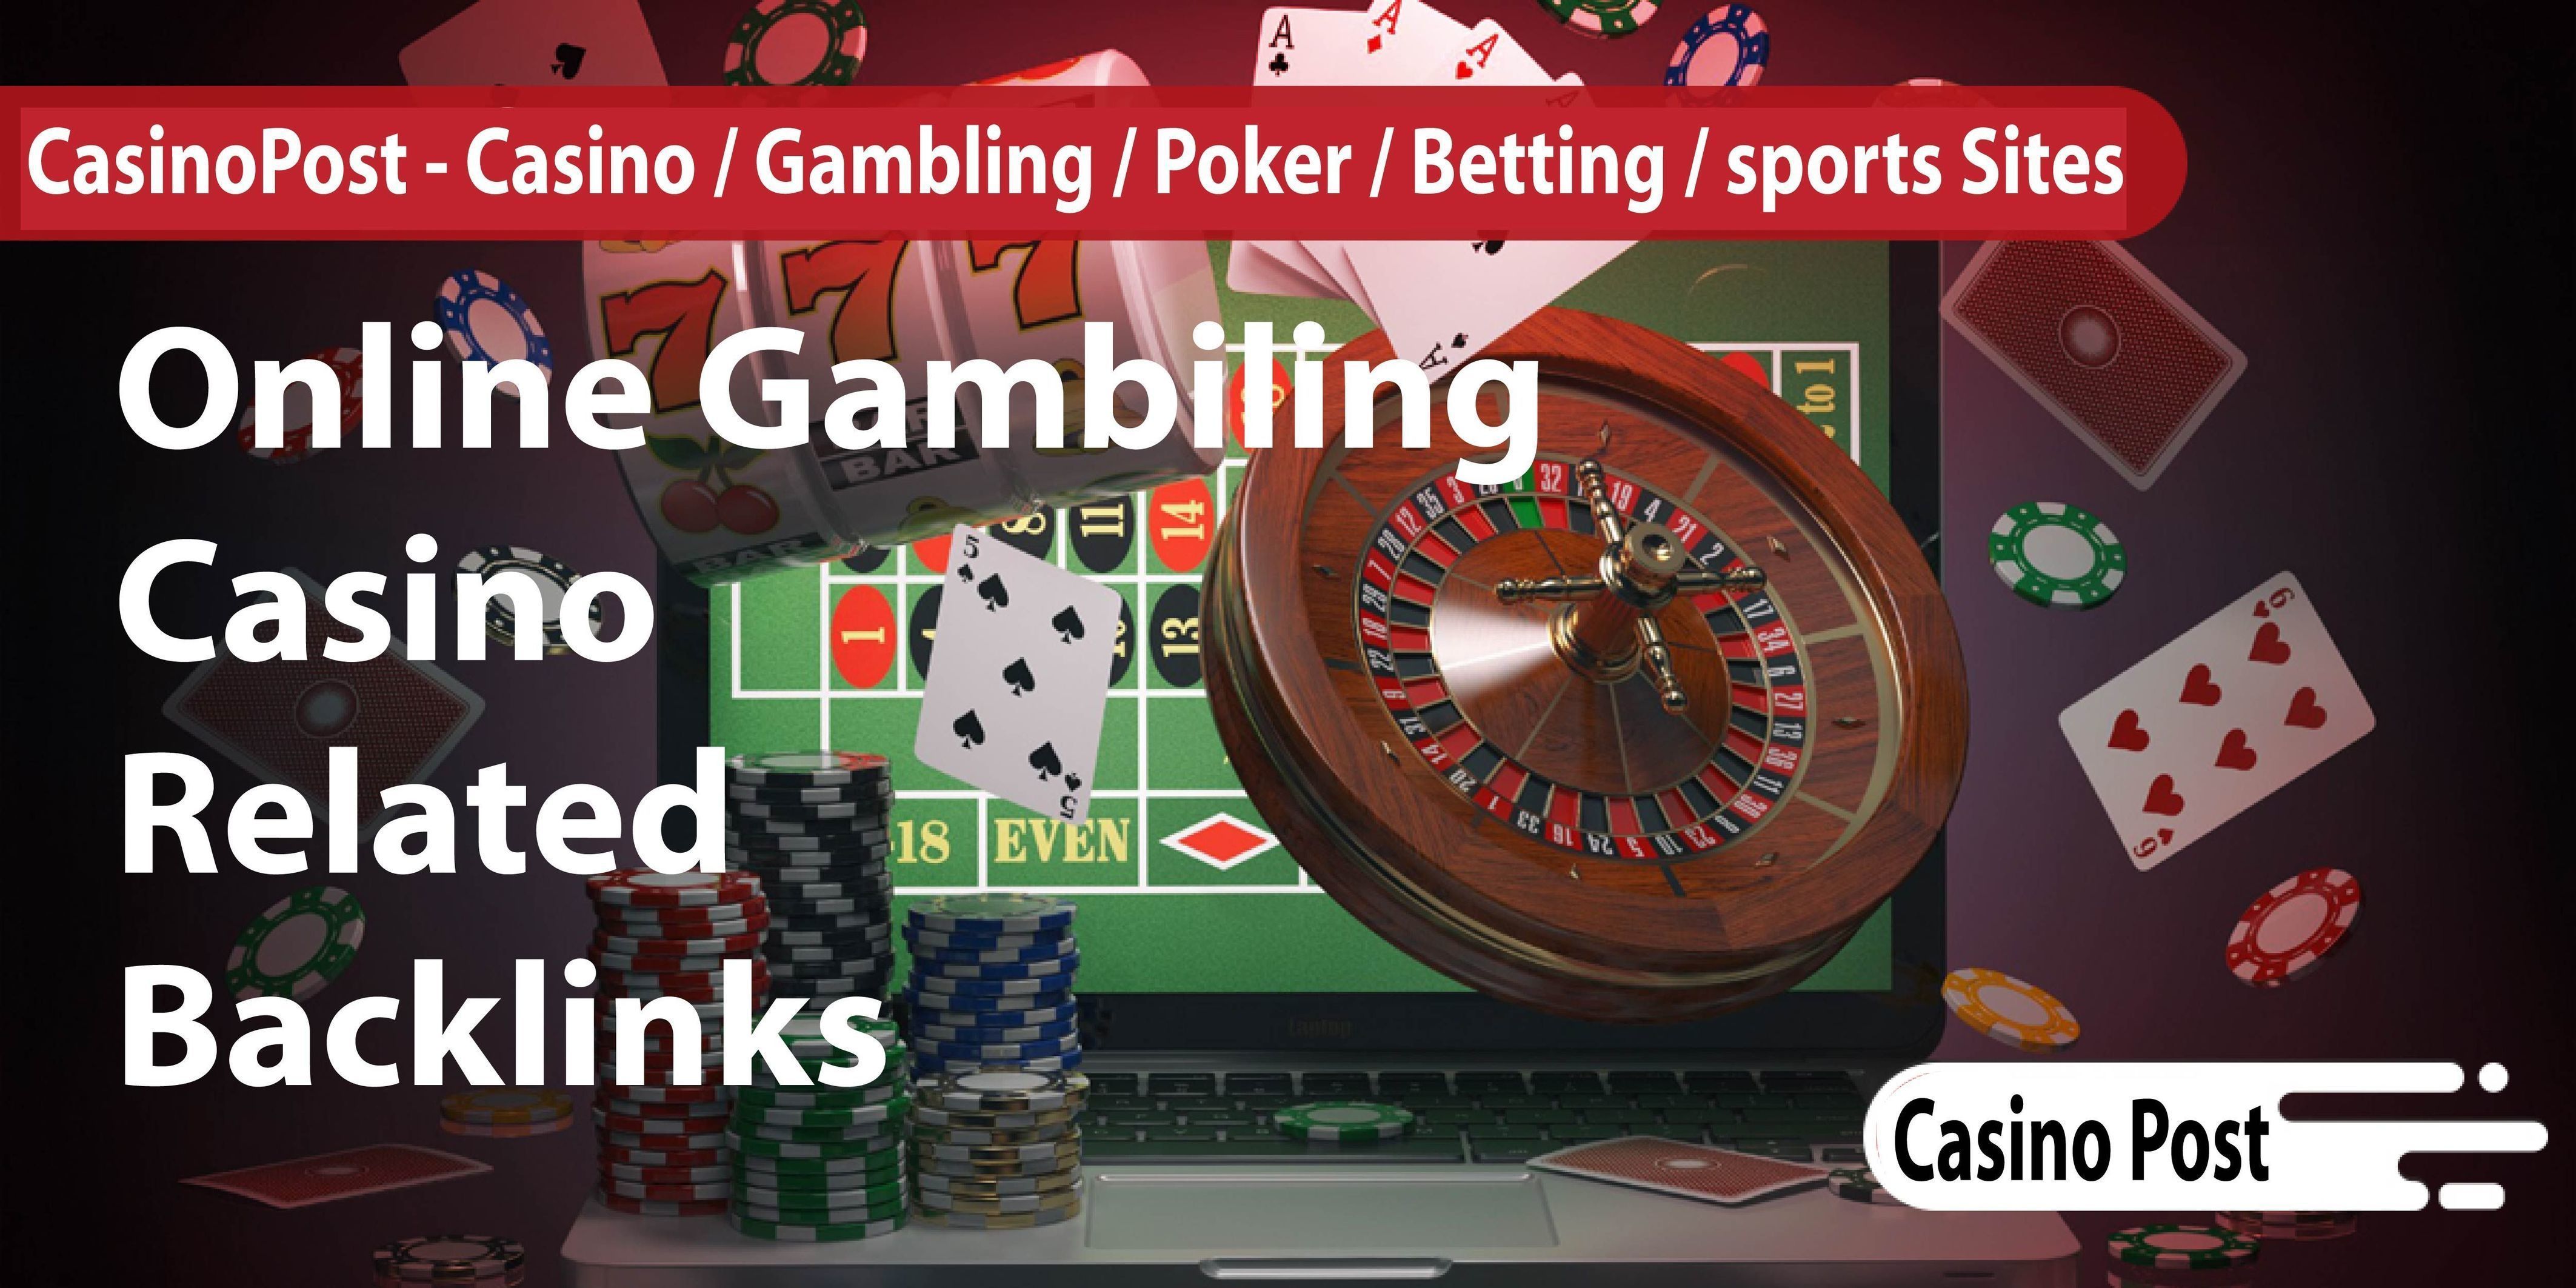 Casino klädkod poker lottoland